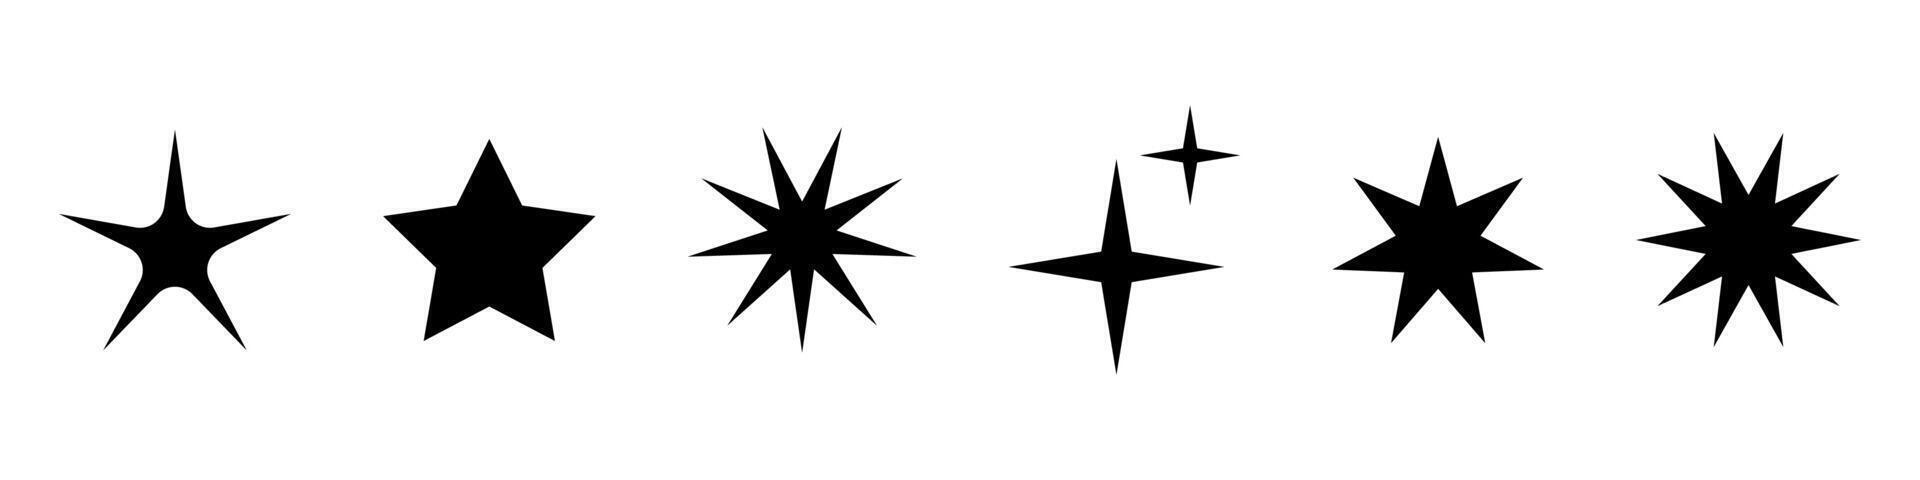 Vektor retro einstellen von futuristisch funkeln Star Symbole. Sammlung von Star Formen. y2k abstrakt Zeichen. abstrakt cool scheinen Elemente zum Banner oder Poster Design.